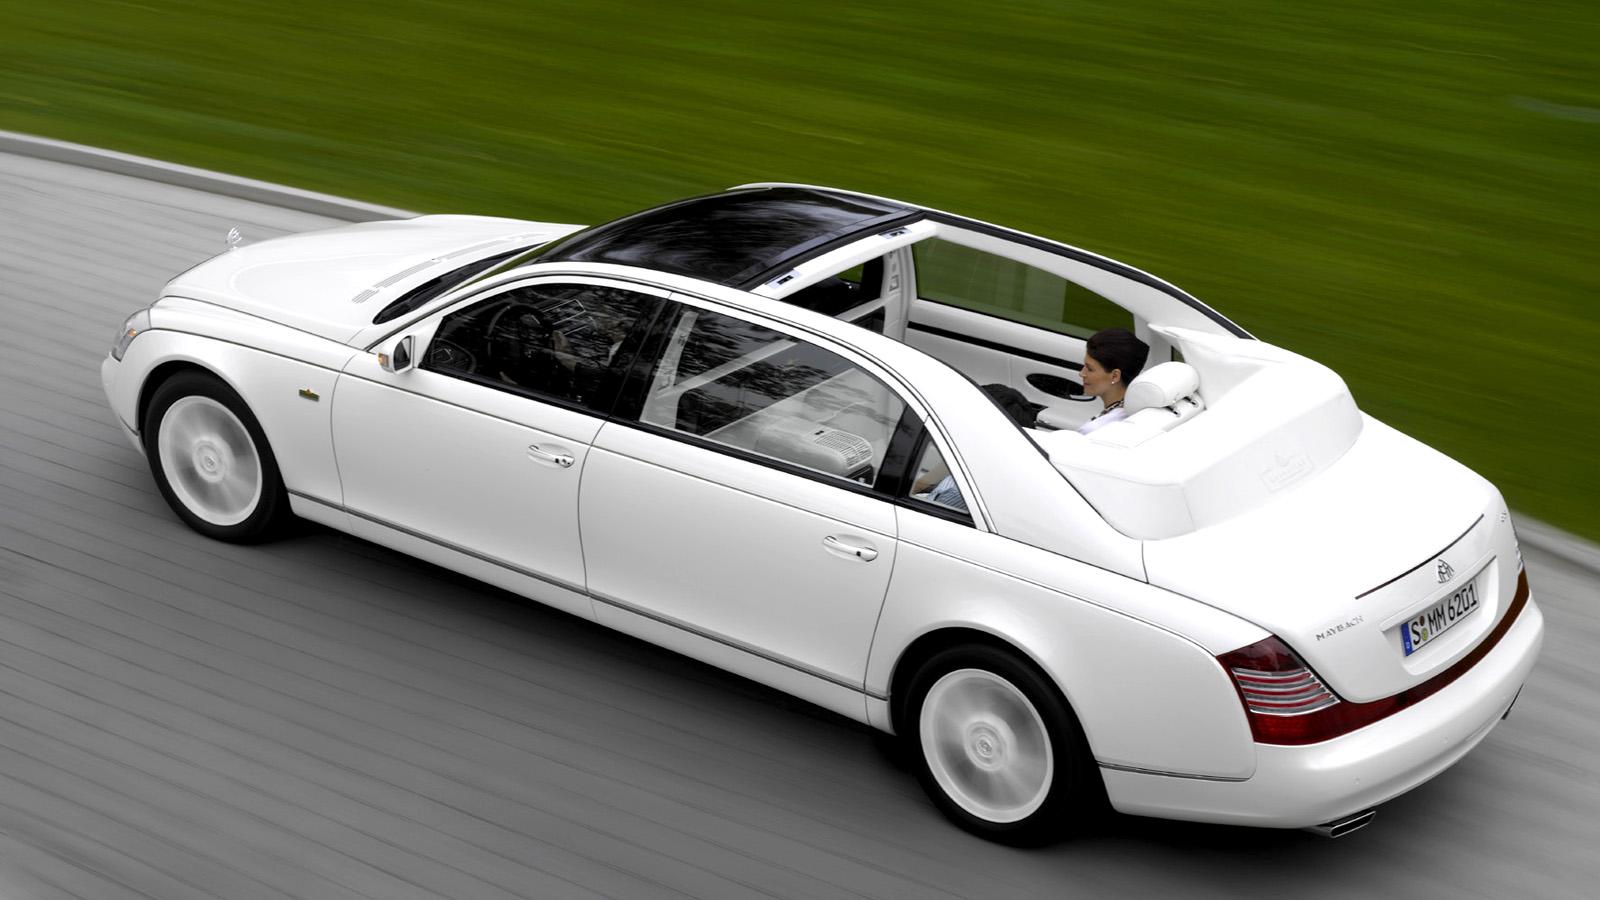 Maybach Landaulet  Mercedes lyxmärke som inte kommer att leva så länge till. Men om du är påve, heter Axl Rose eller ska gifta dig snart - här är bilen. Motor: 12 cyl. 620 hk. Acceleration: 0-100 km/tim på 5,2 s. Pris: 1,4 miljoner dollar - ca. 9 600 000 kronor.